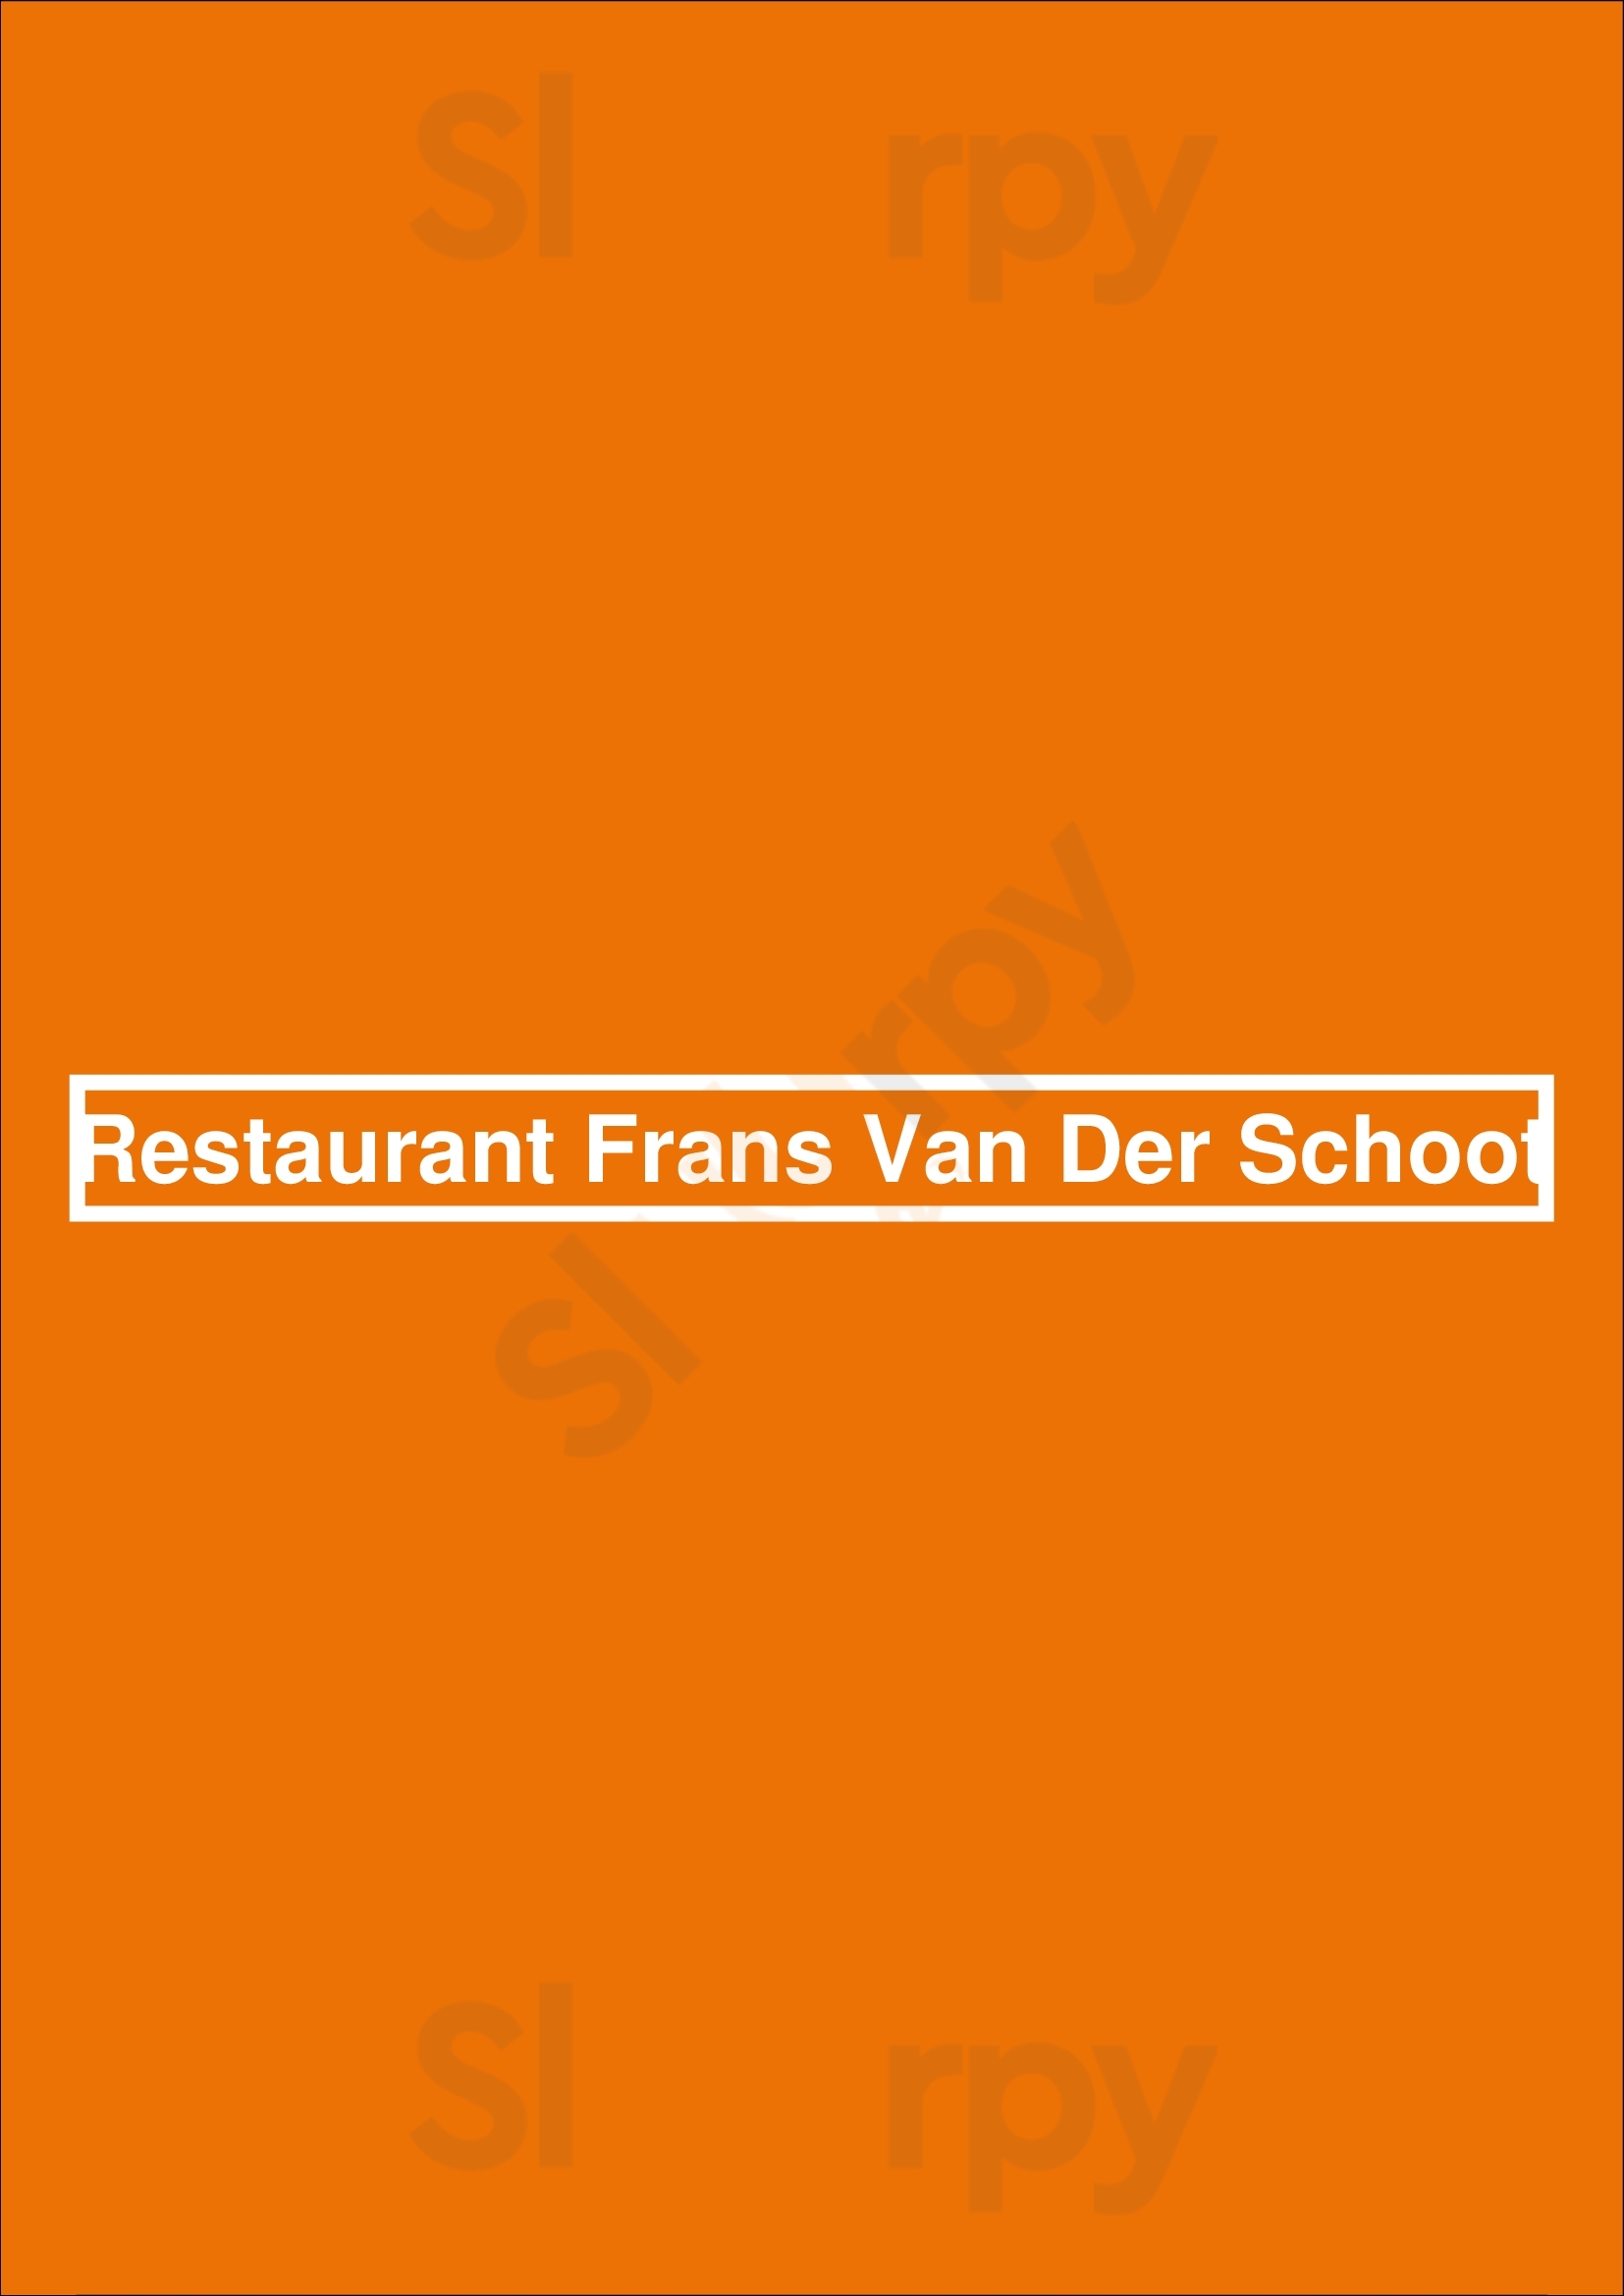 Restaurant Frans Van Der Schoot Oss Menu - 1